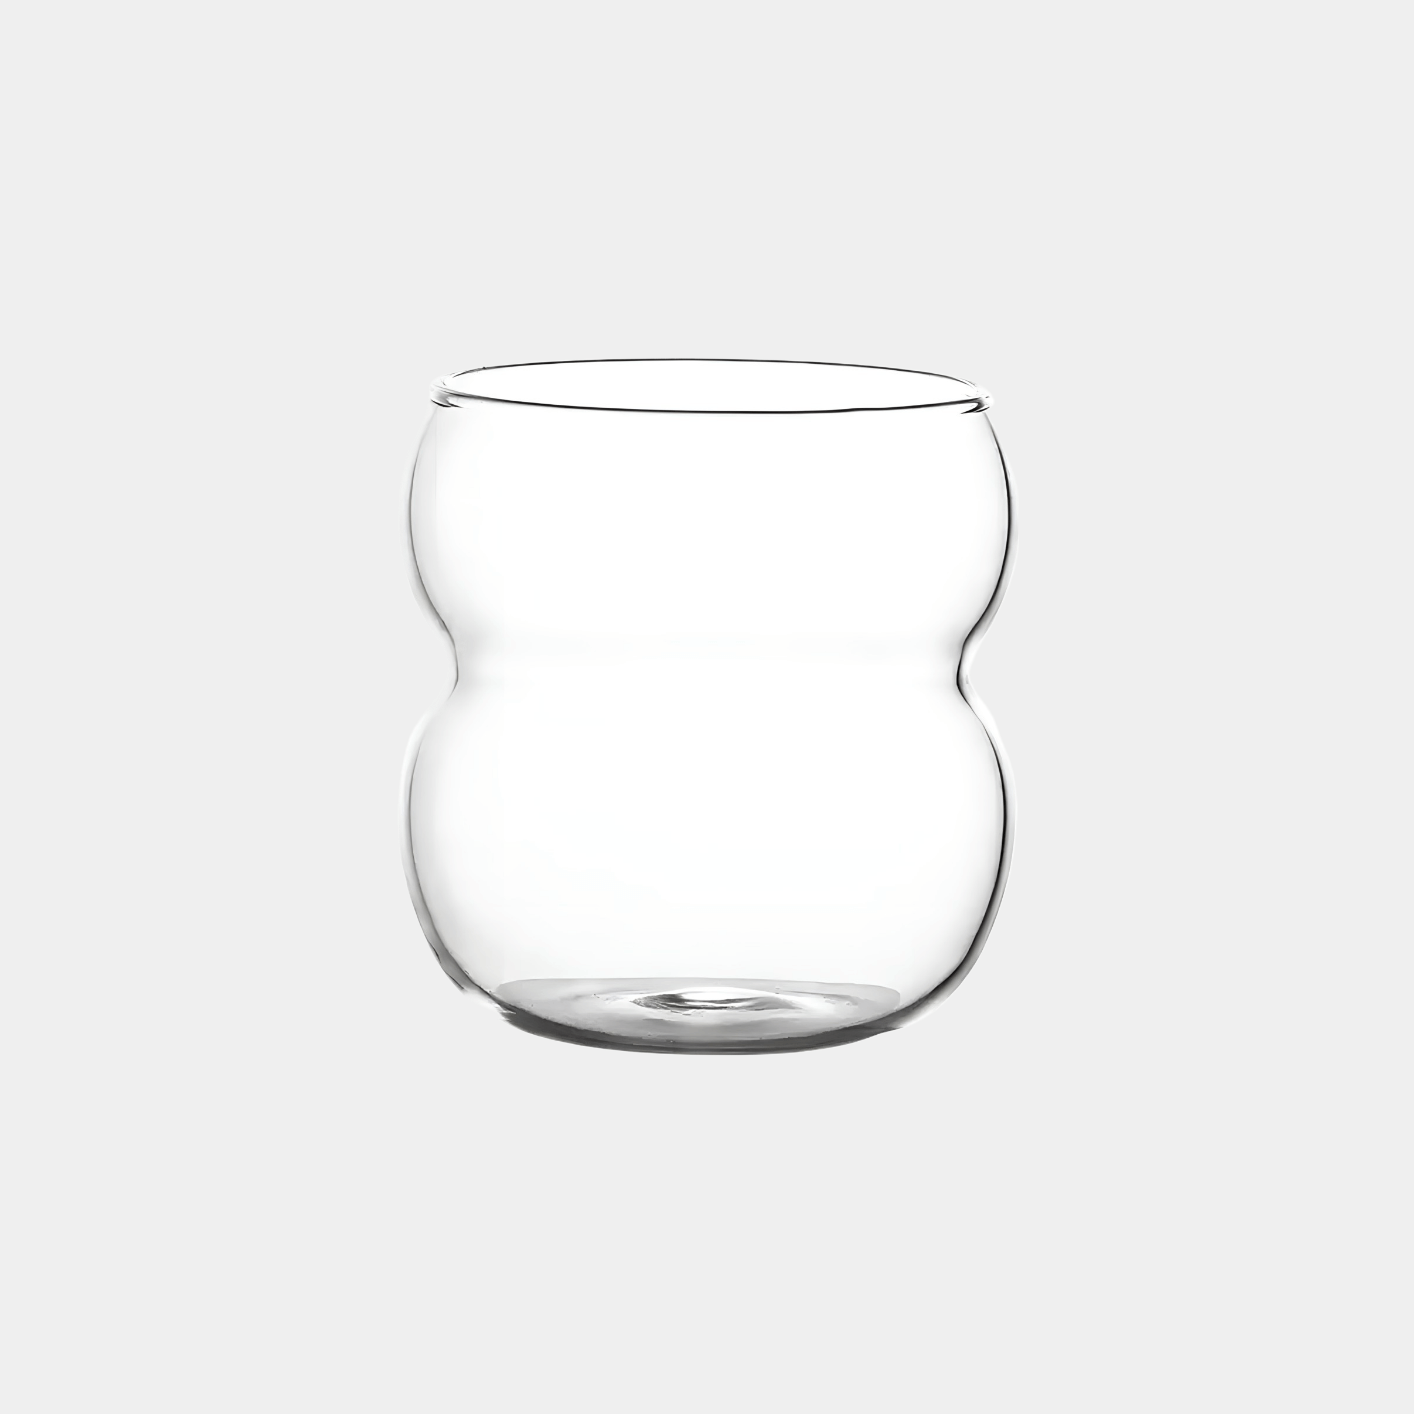 Ein stilvolles, modernes Bubble Glas | Parisian Love, präsentiert vor einem grauen Hintergrund - Luxuriöses Trinkglas mit zeitlosem, gewölbtem und welligem Design sowie ästhetischem Appeal. Handgefertigt und mundgeblasen für ein einzigartiges Trinkerlebnis. Perfekt für Cocktails, Kaffee oder Erfrischungsgetränke. Ein Blickfang auf jedem Tisch. Ideal für den täglichen Gebrauch oder besondere Anlässe. Erleben Sie Luxus und Eleganz mit diesem hochwertigen, einzigartigen und edlen Trinkglas.